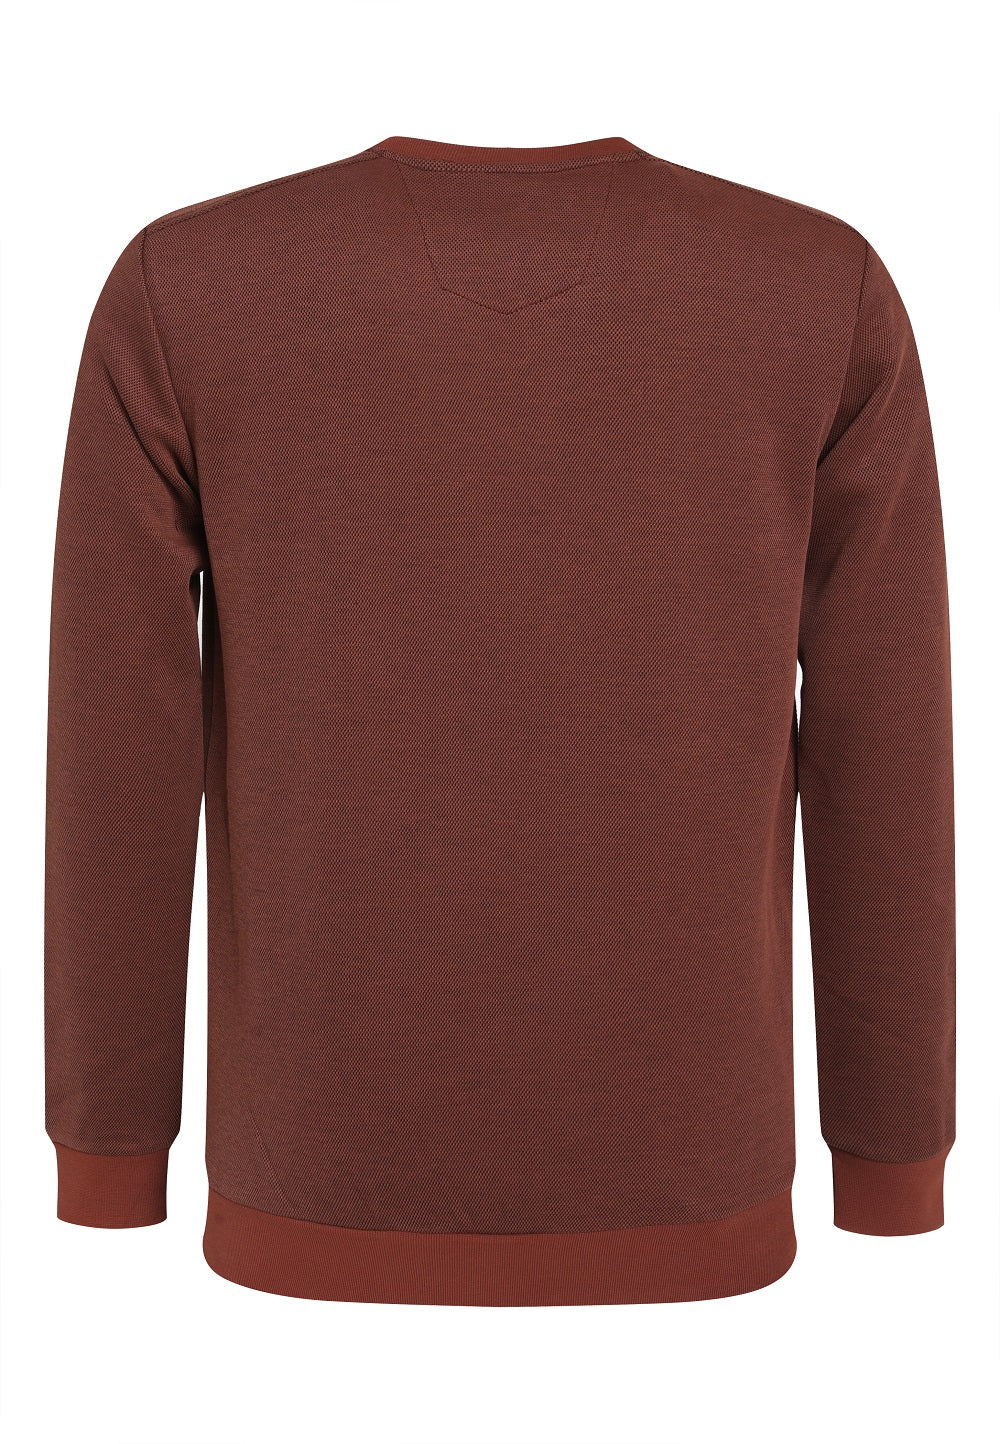 Gabbiano - Heren Sweater - 772723 - 817 Rusty Brick